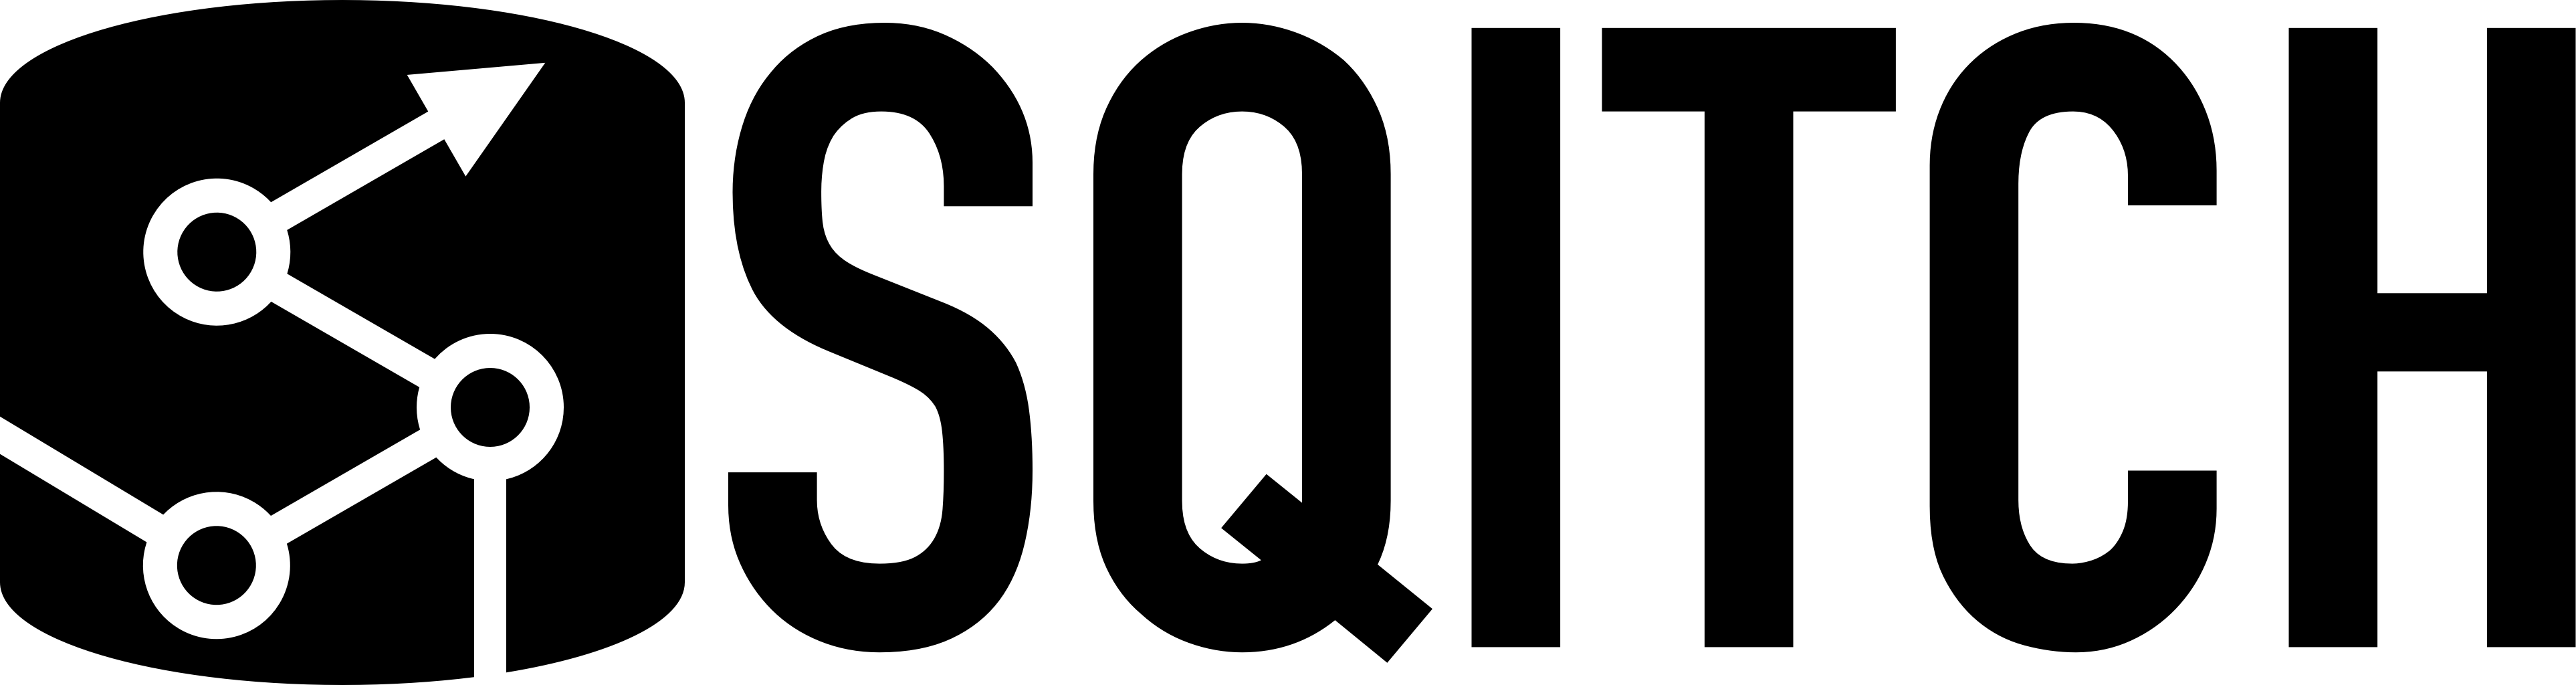 Black Sqitch Logo